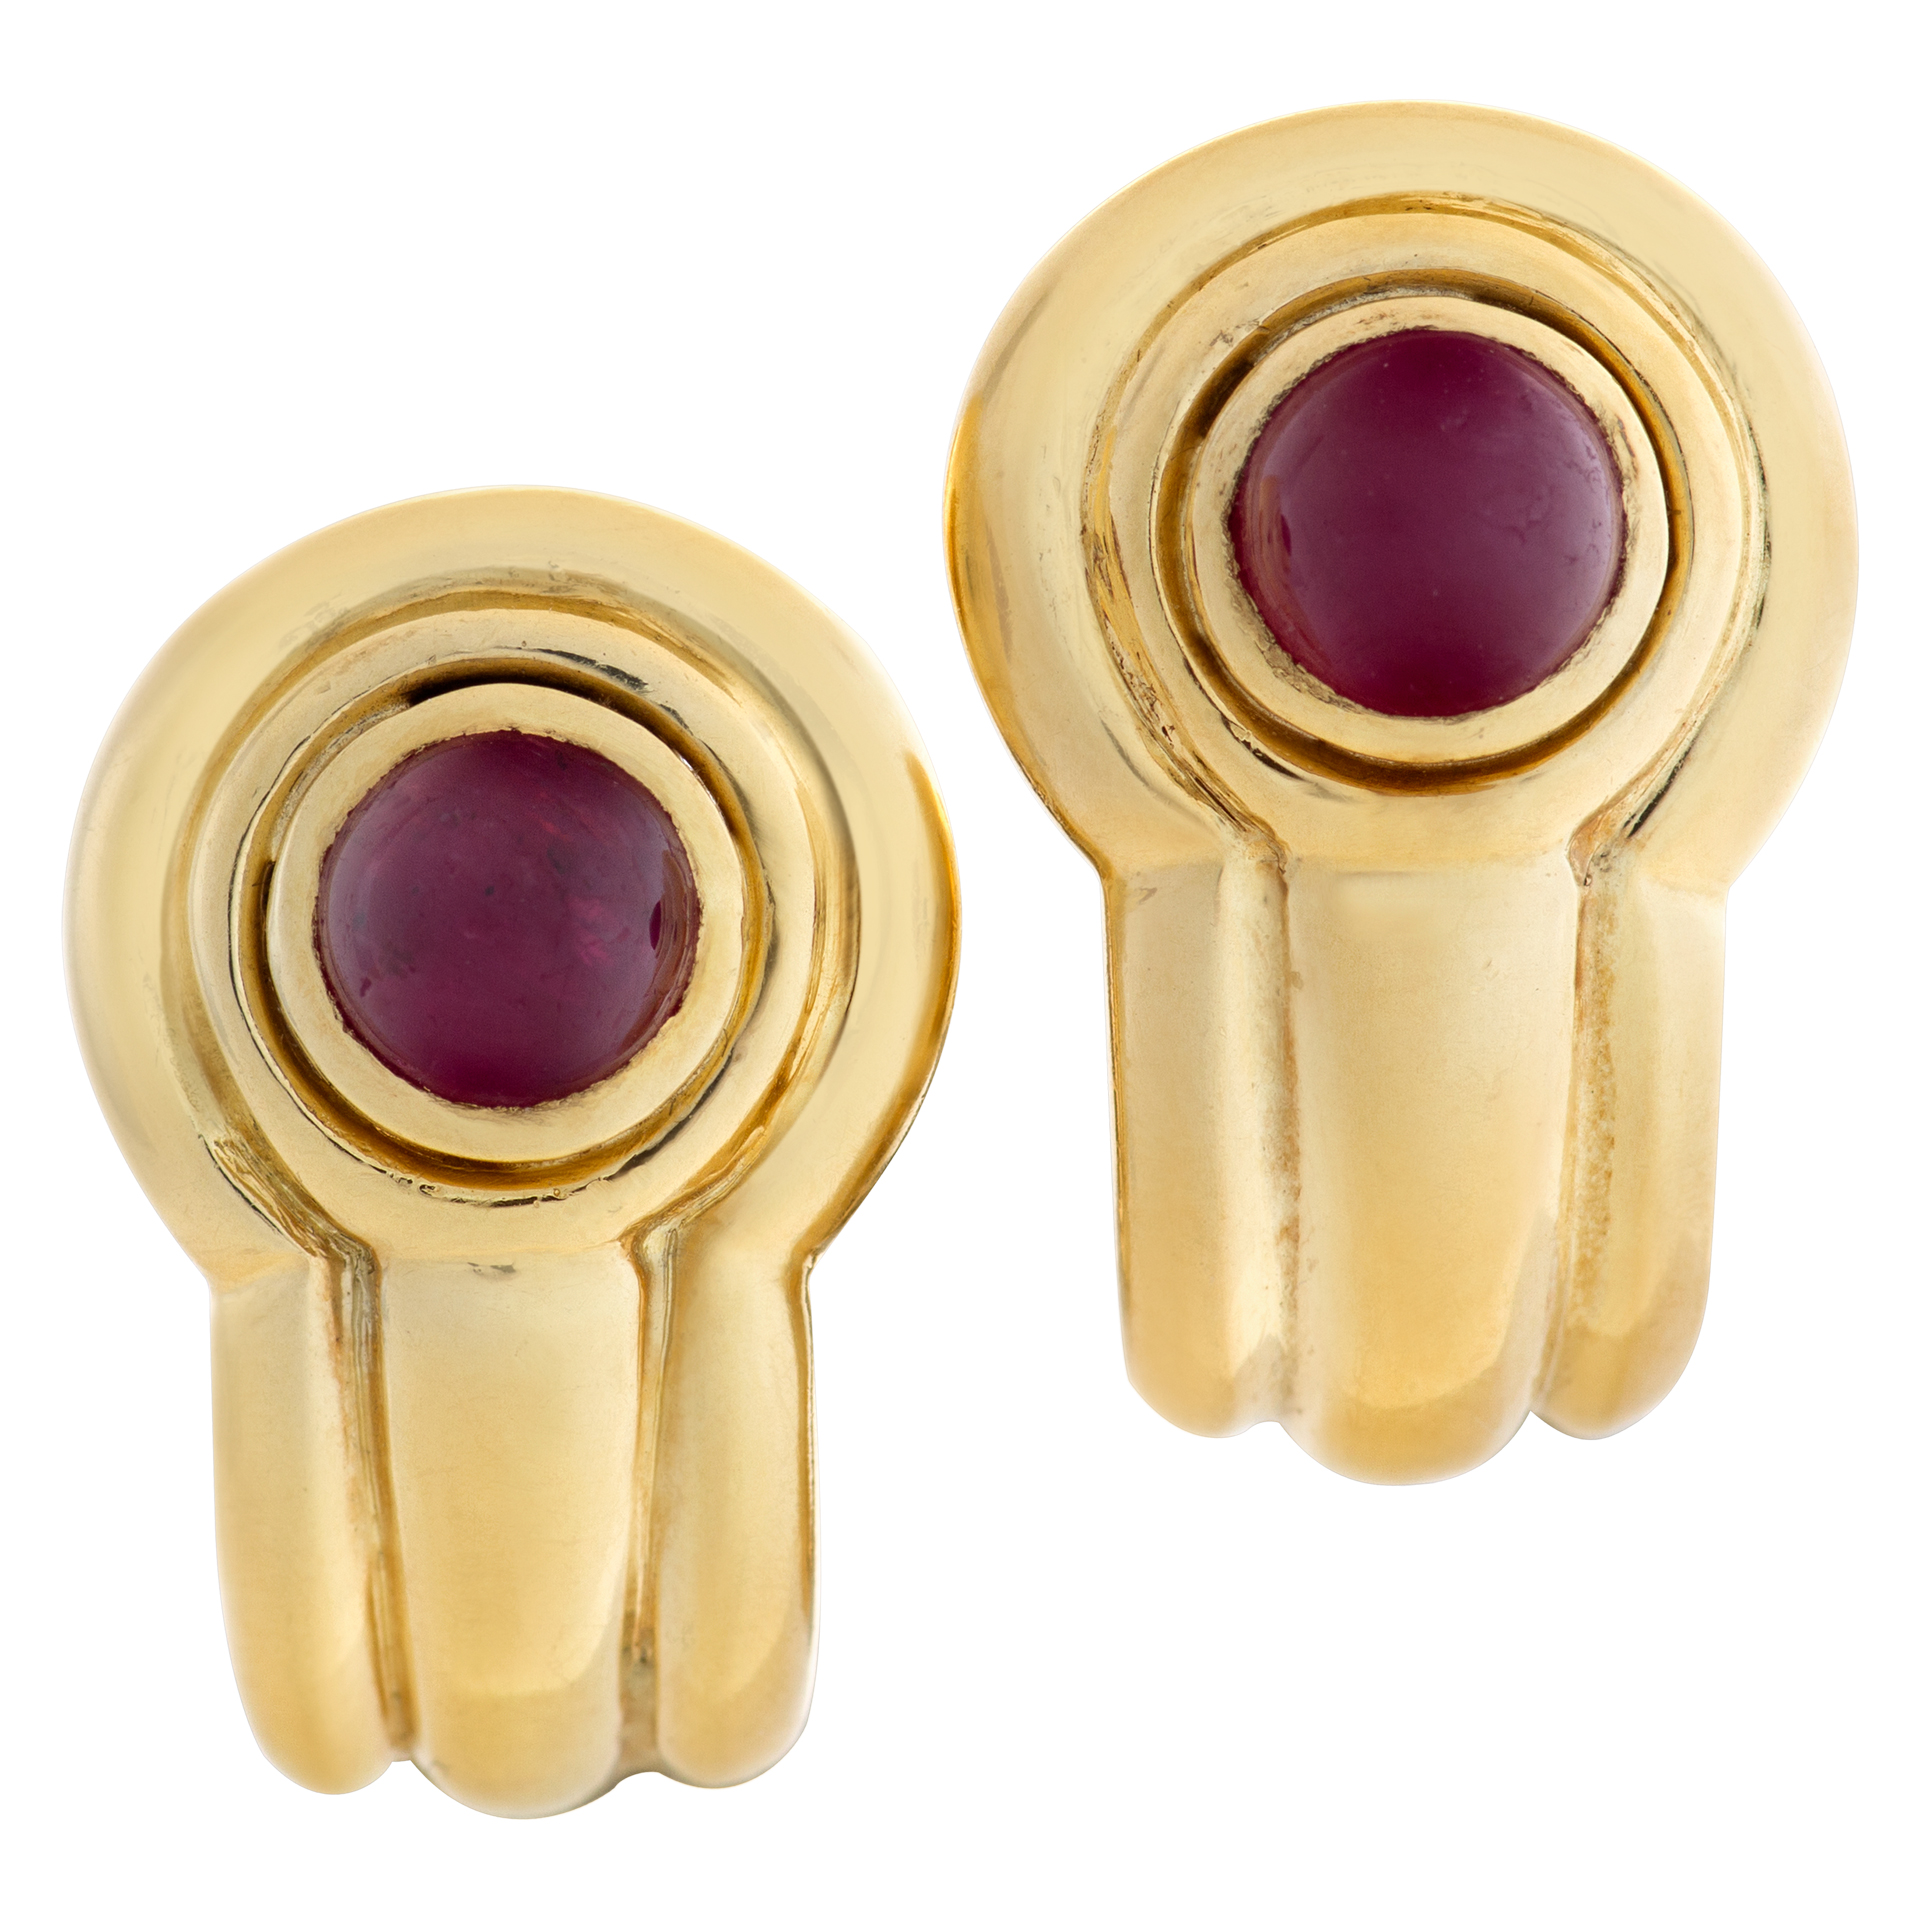 Ruby cabochon earrings in 18k image 1